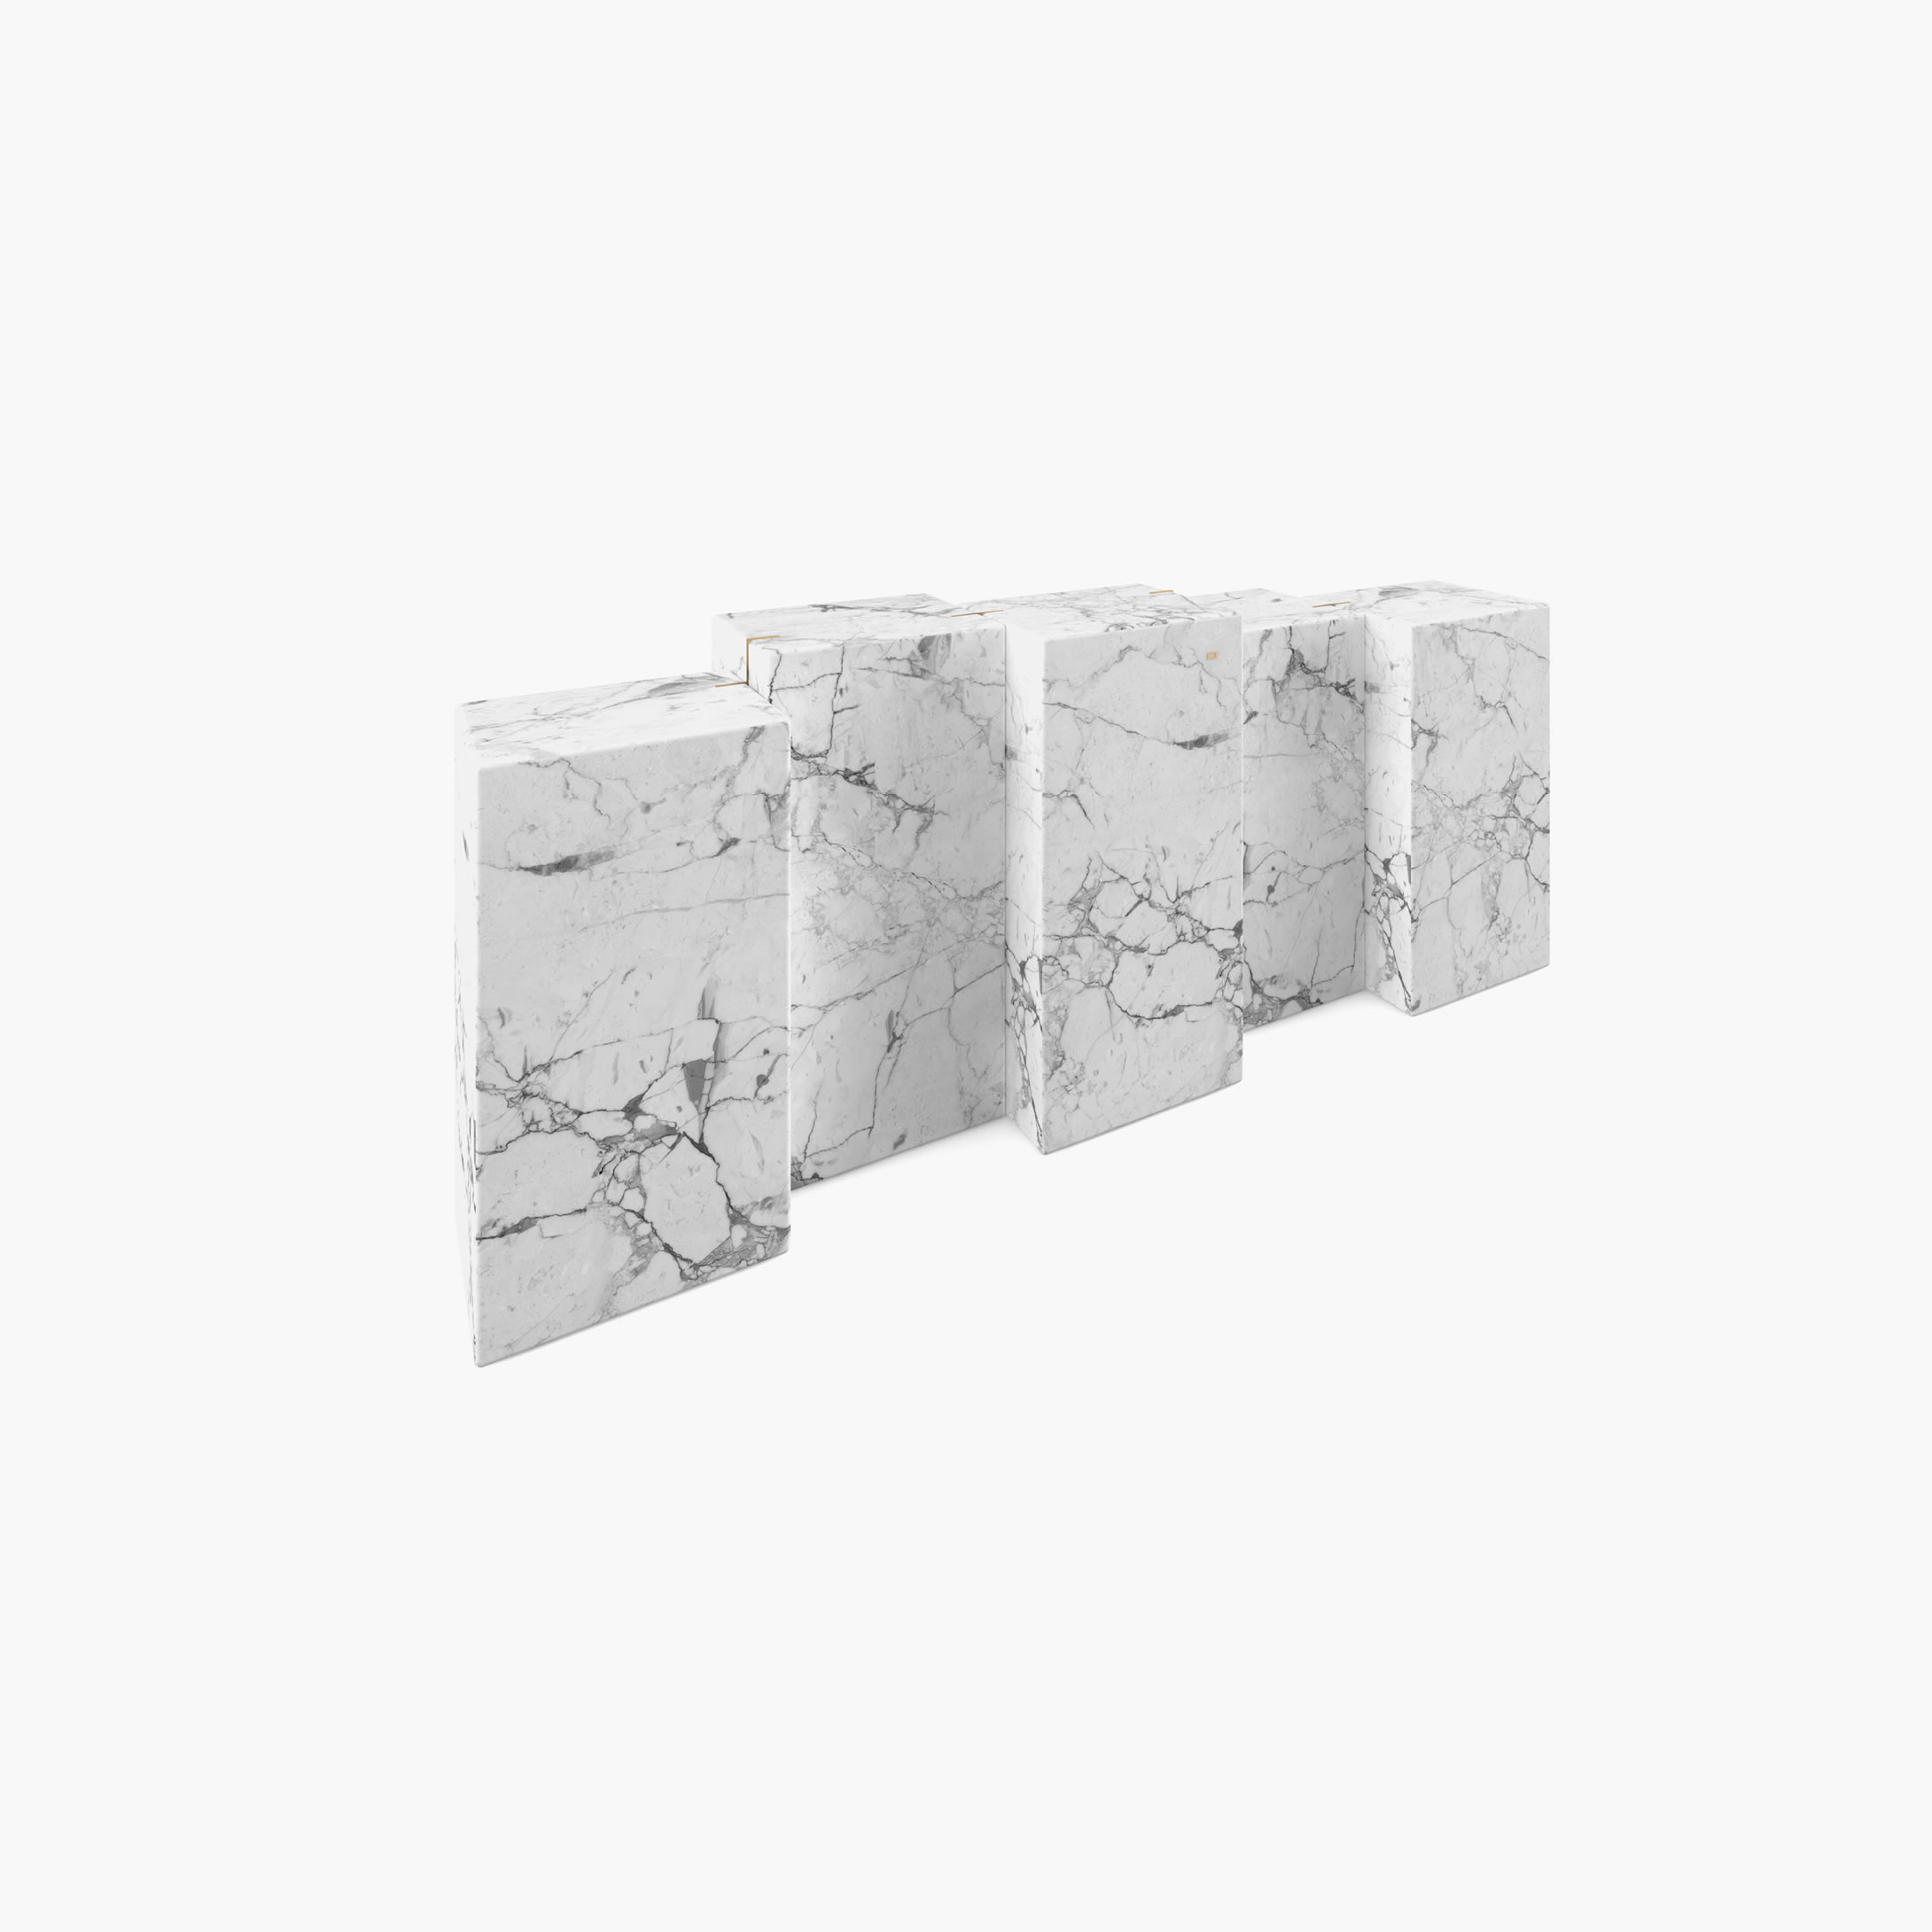 Sideboard unterschiedlich hohen quadratischen Quadern Weiss Arabescato Marmor Kunst Wohnzimmer Kunstwerke Sideboards FS 8 FELIX SCHWAKE